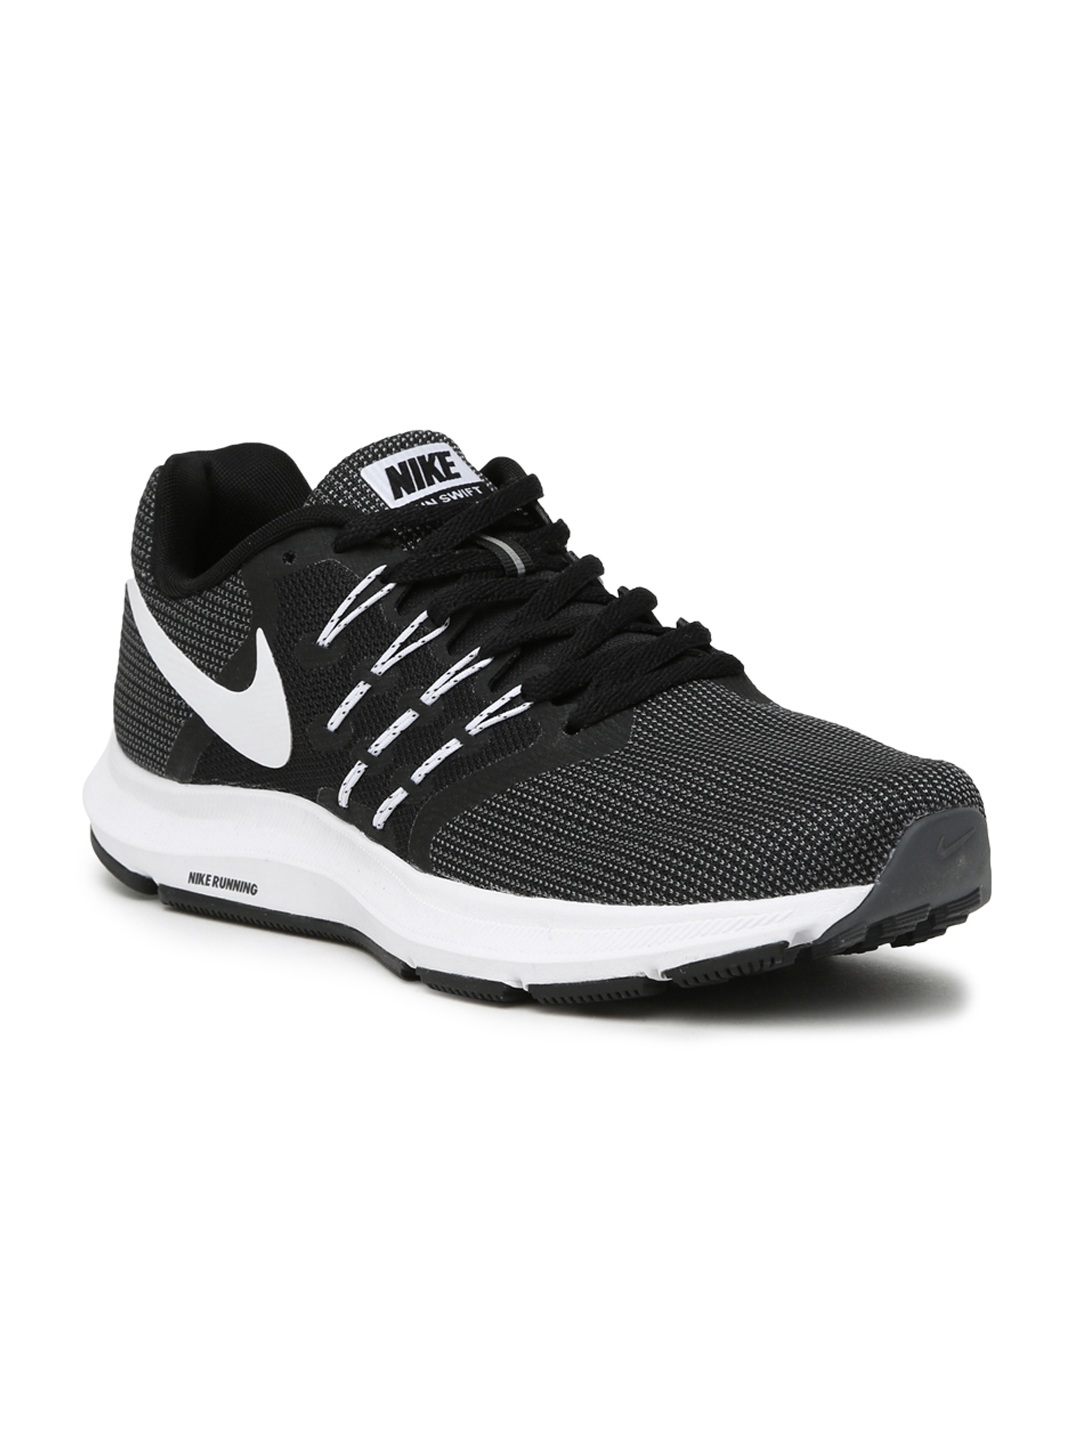 Buy Nike Men Black & Charcoal Grey RUN SWIFT Running Shoes - Shoes for Men 1963122 | Myntra